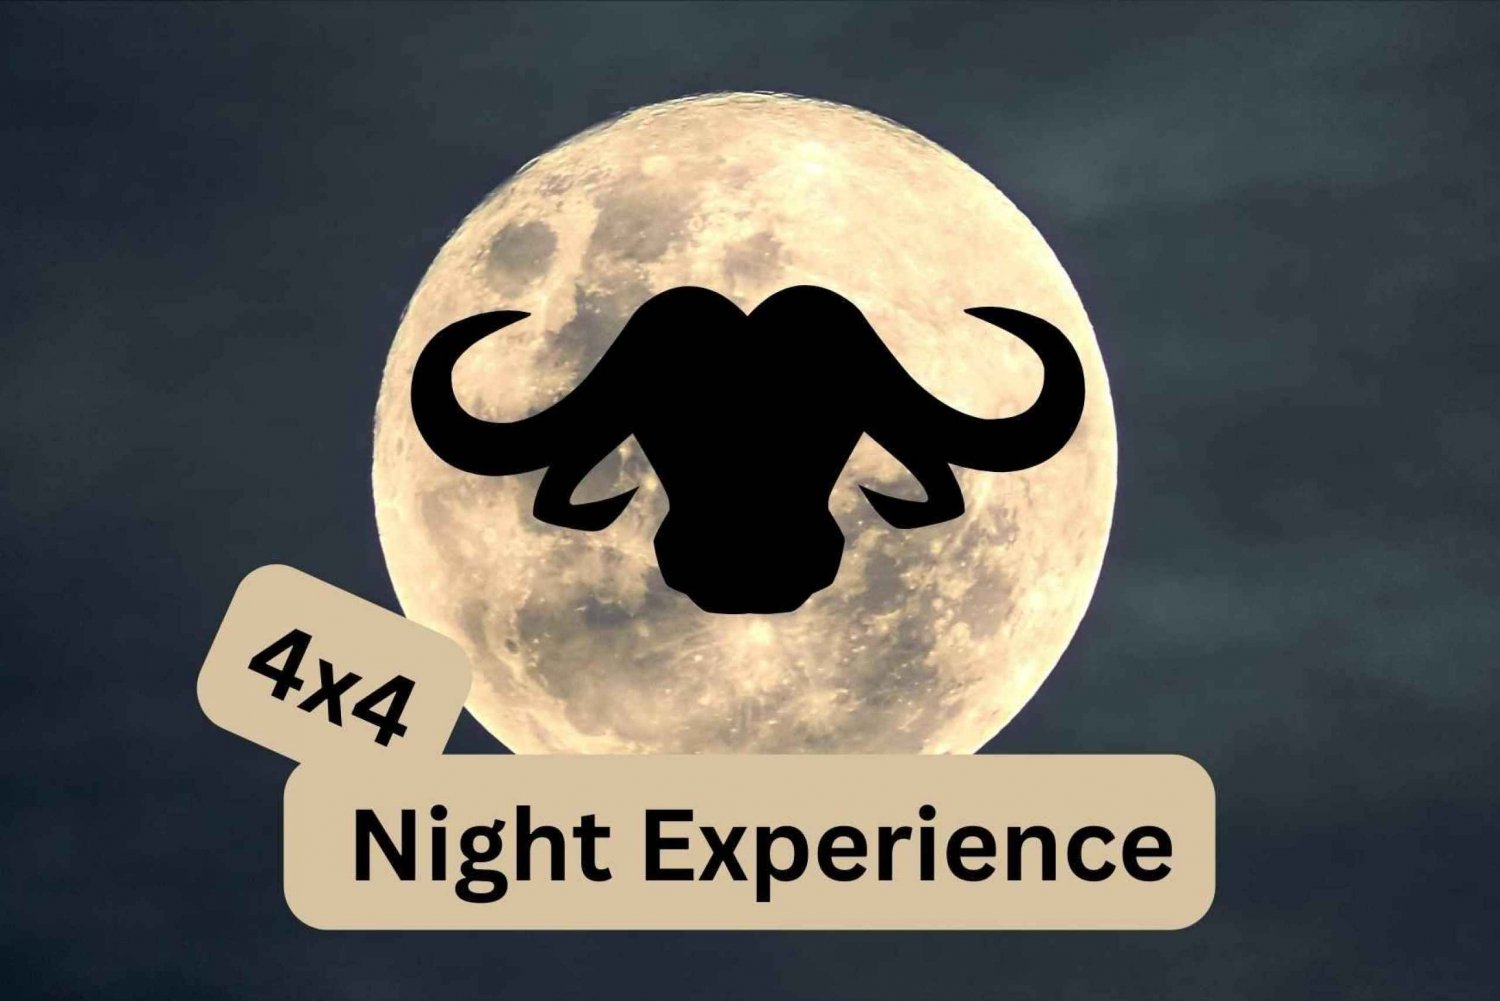 Victoria Falls : 4x4 Night Experience around Victoria Falls